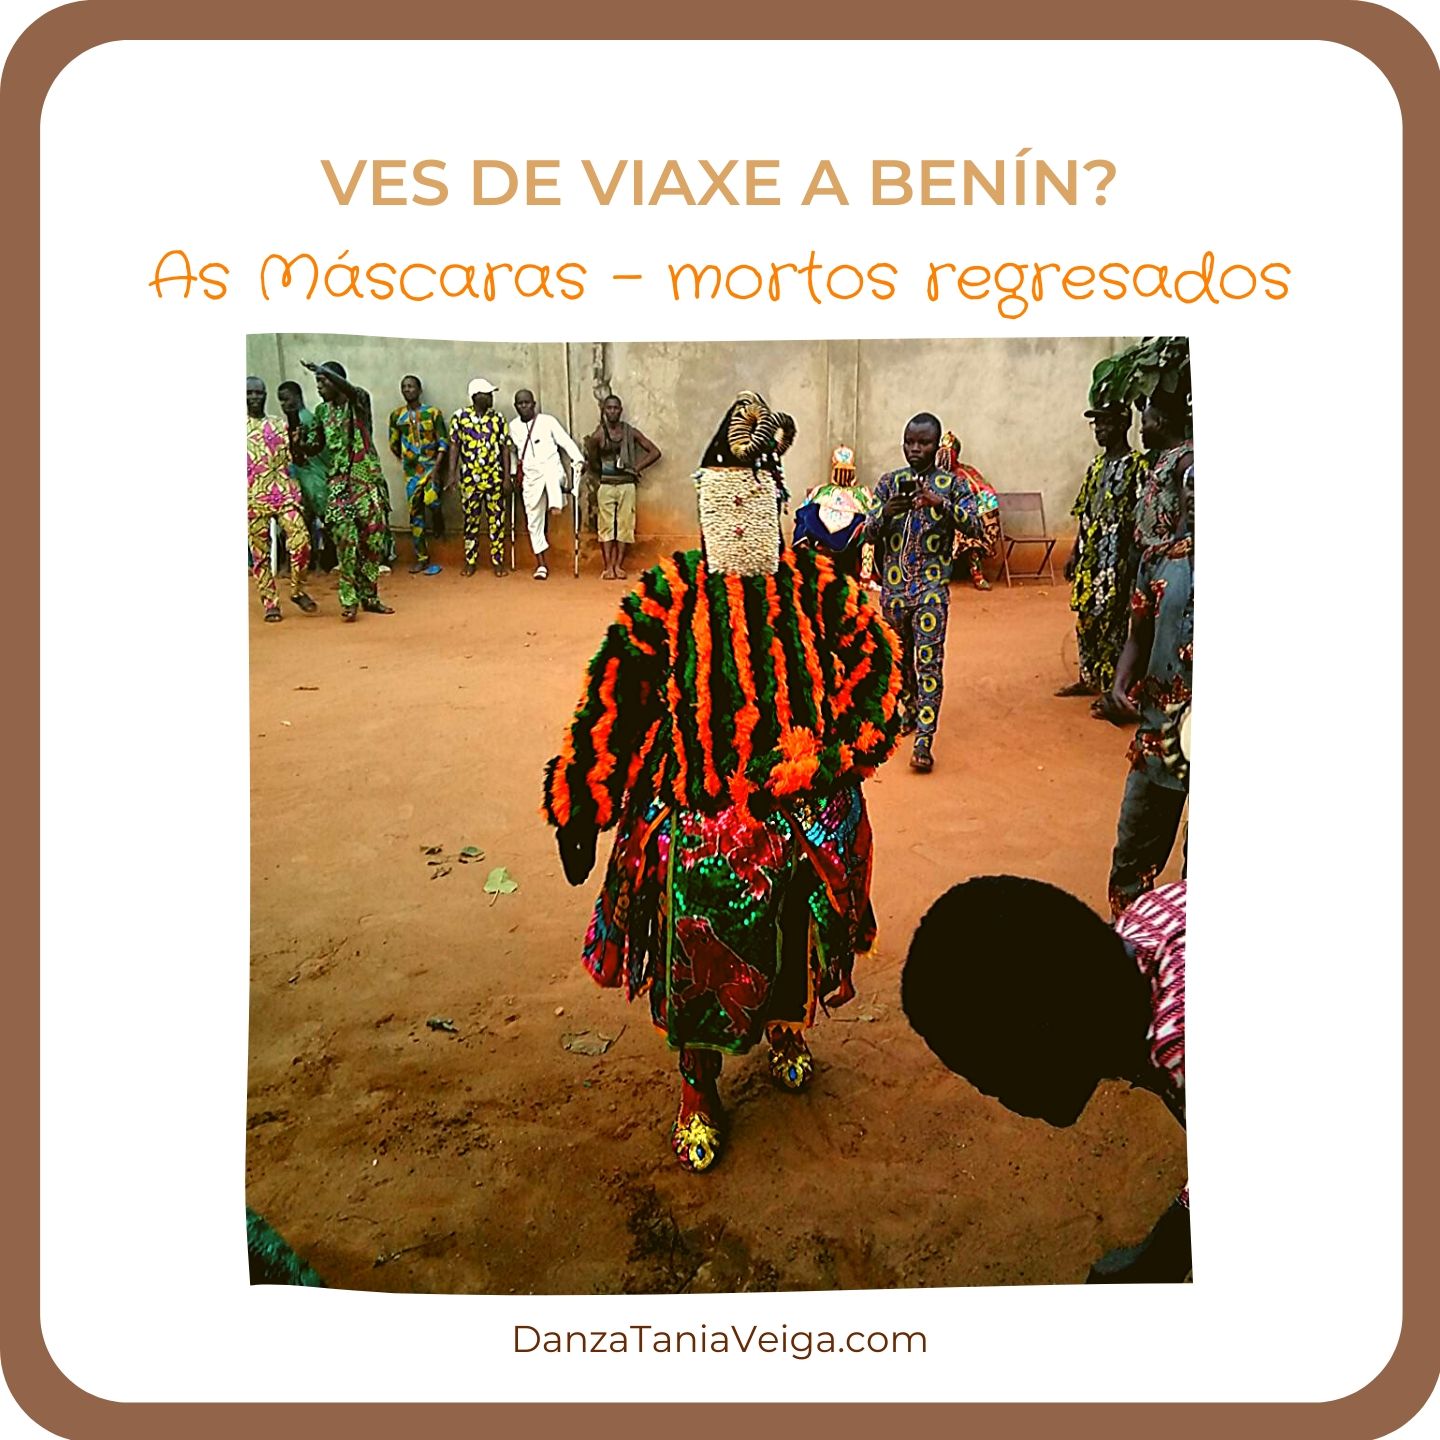 Ves de viaxe a Benín? Cerimonia das Máscaras - mortos regresados